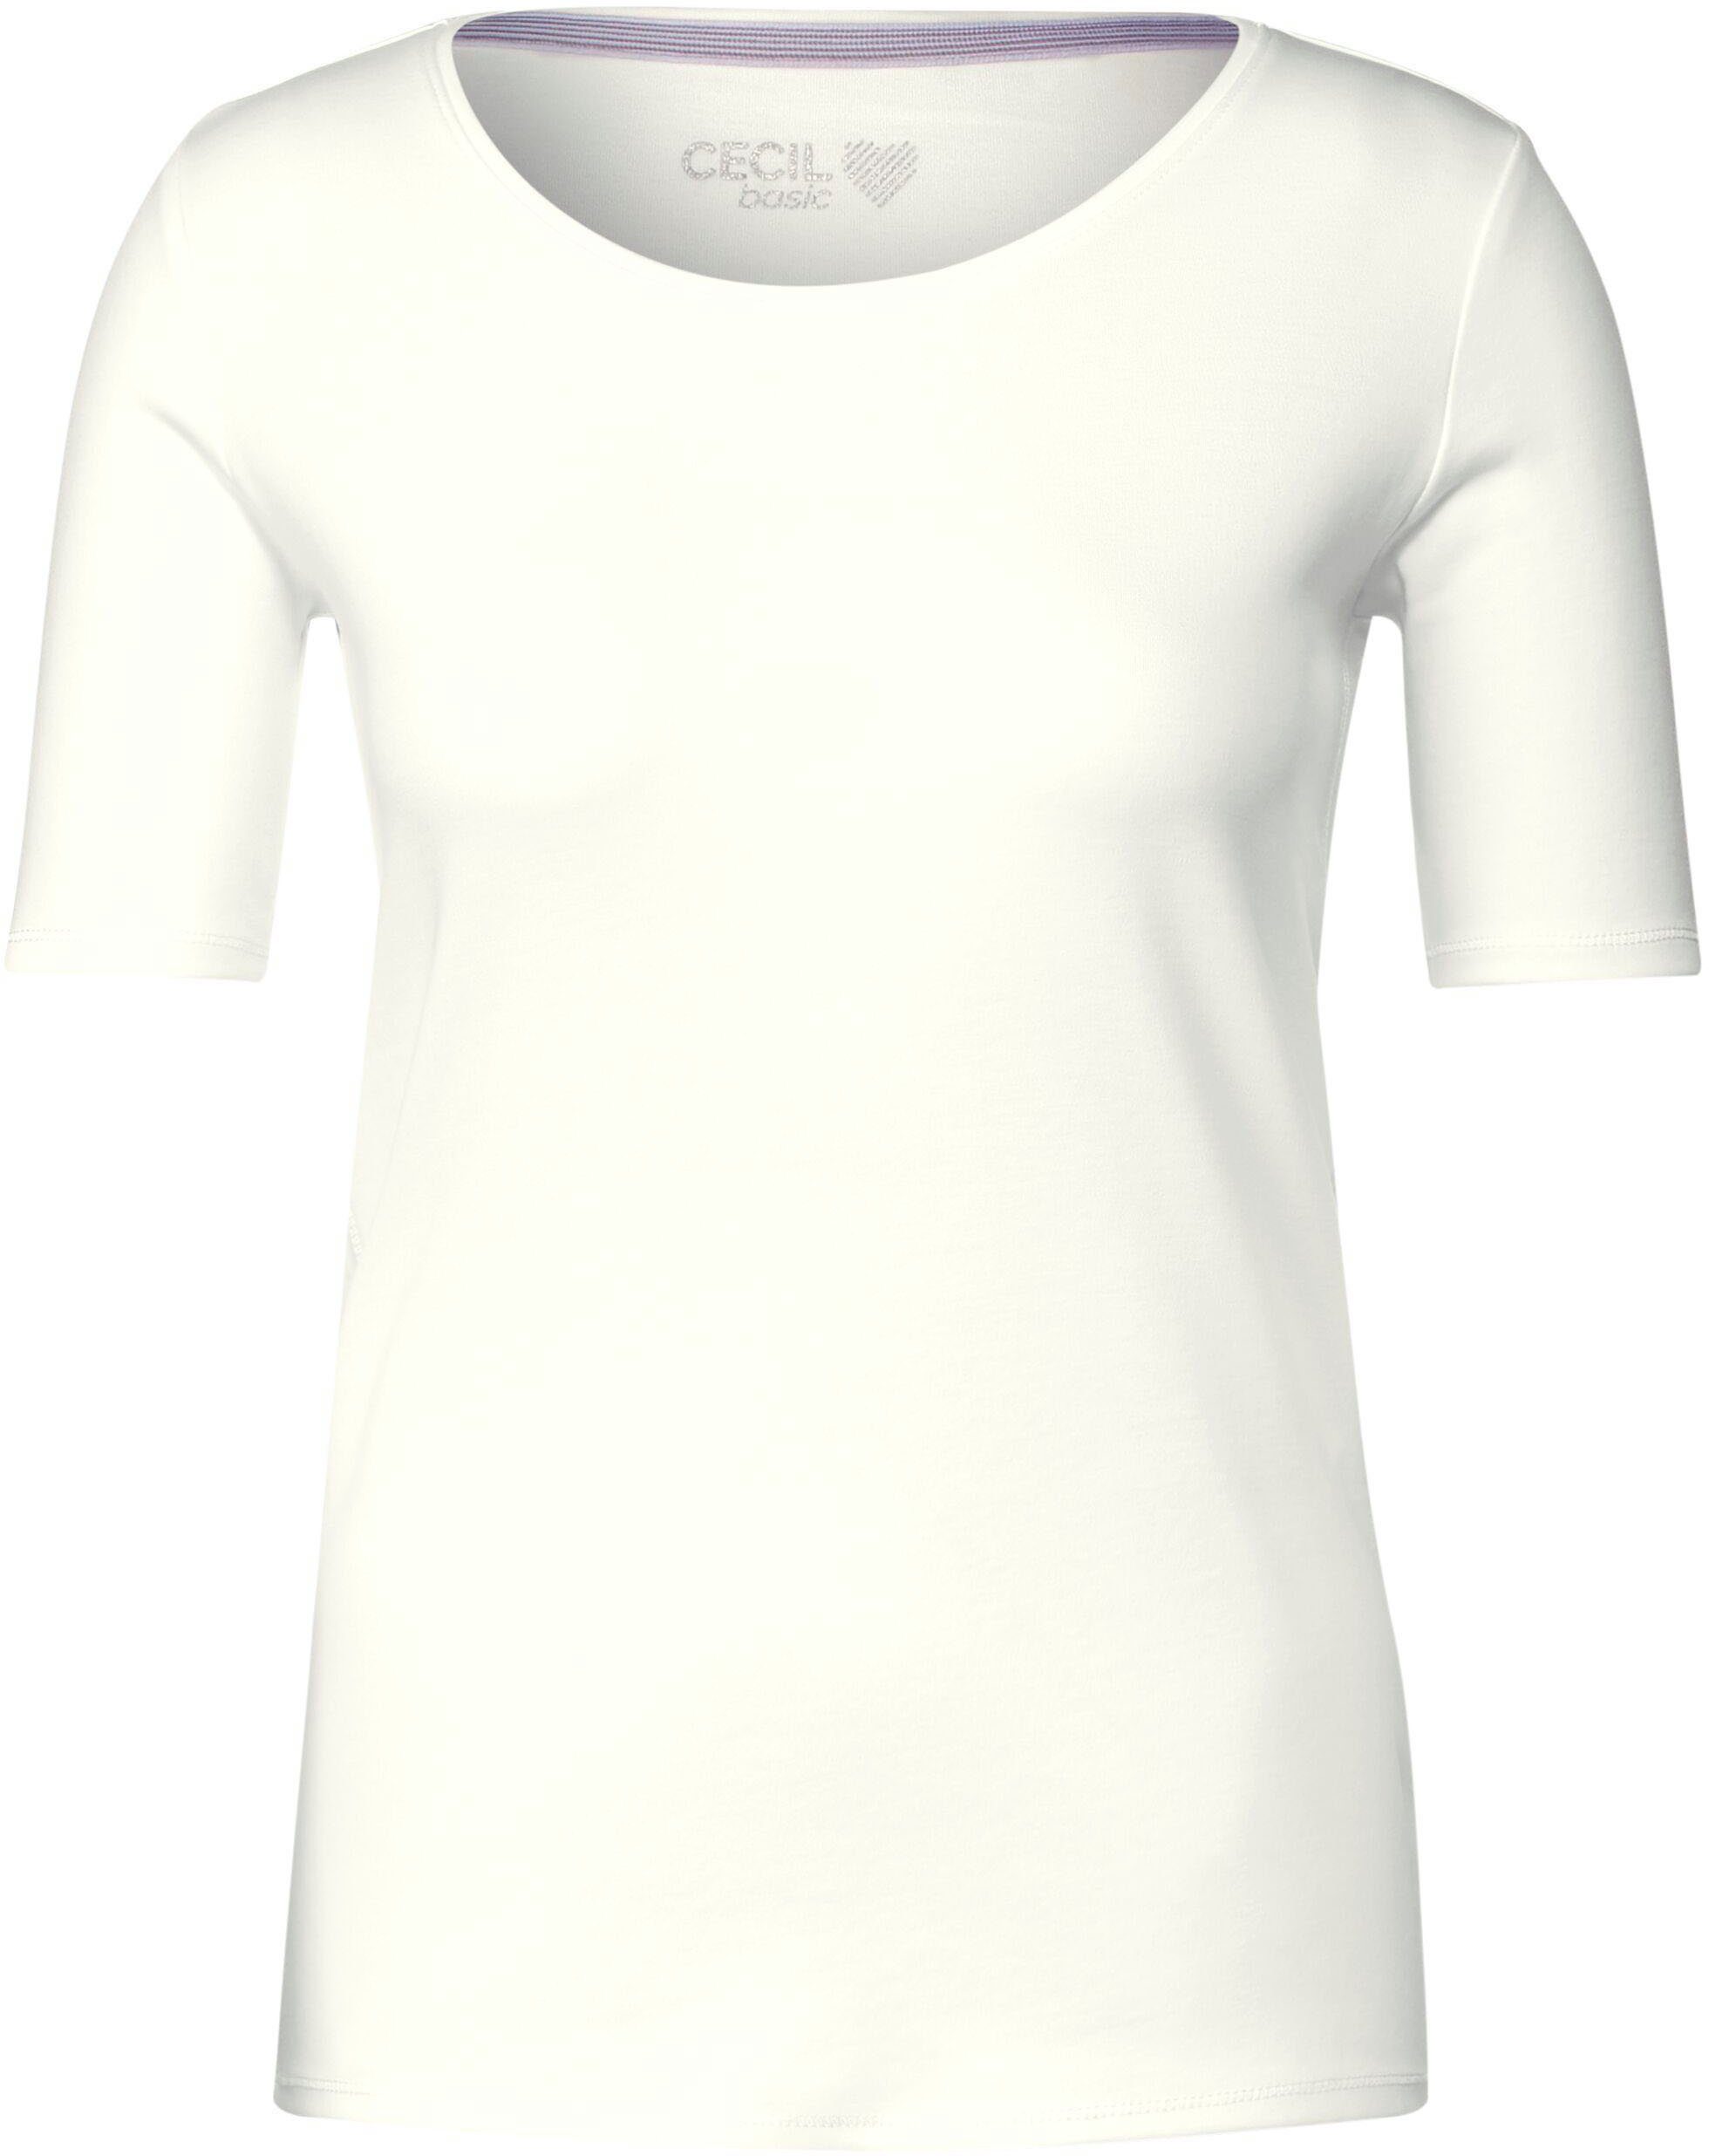 Cecil vanilla T-Shirt white Rundhalsausschnitt mit